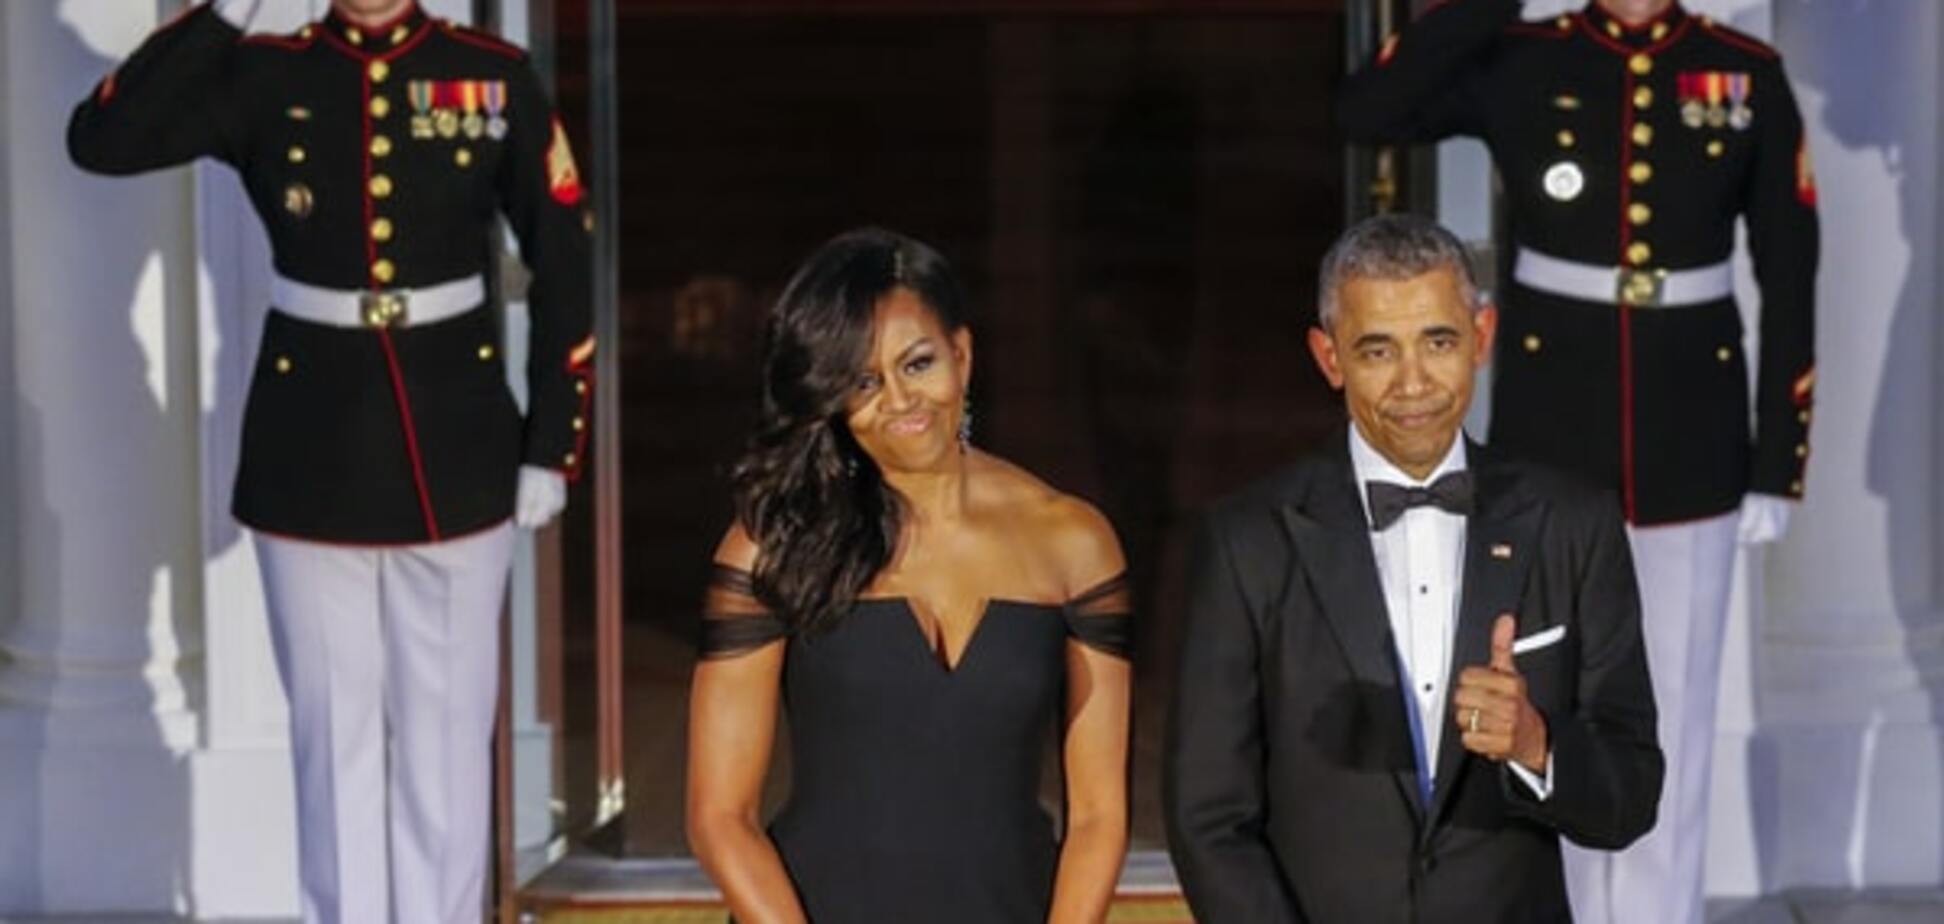 Мишель Обама пришла на официальный ужин в супероткровенном наряде: опубликованы фото